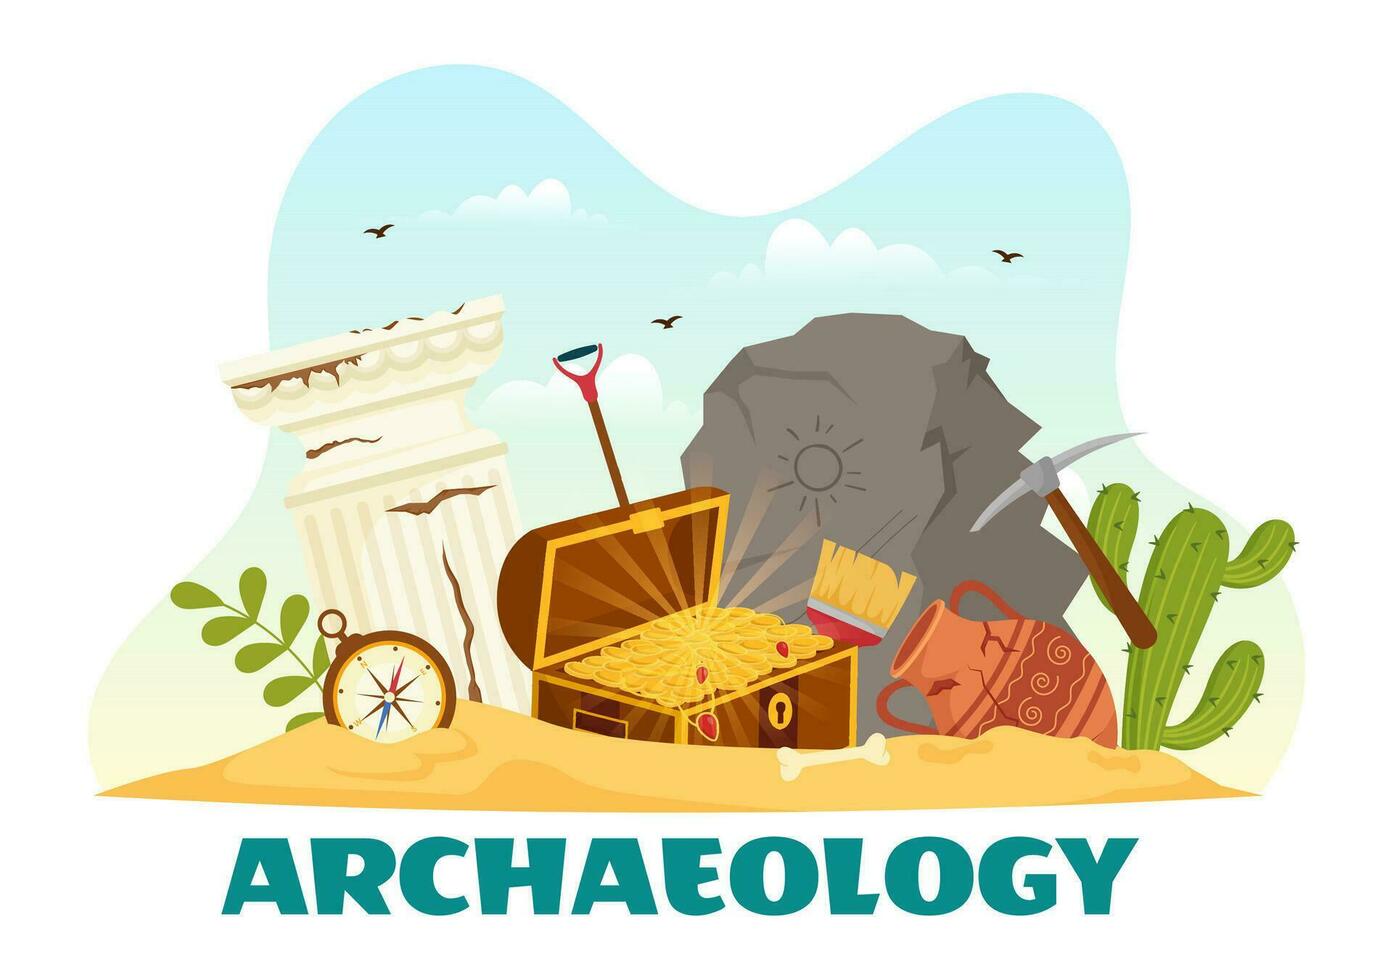 archéologie vecteur illustration avec archéologique les fouilles de ancien ruines, artefacts et dinosaures fossile dans plat dessin animé main tiré modèles